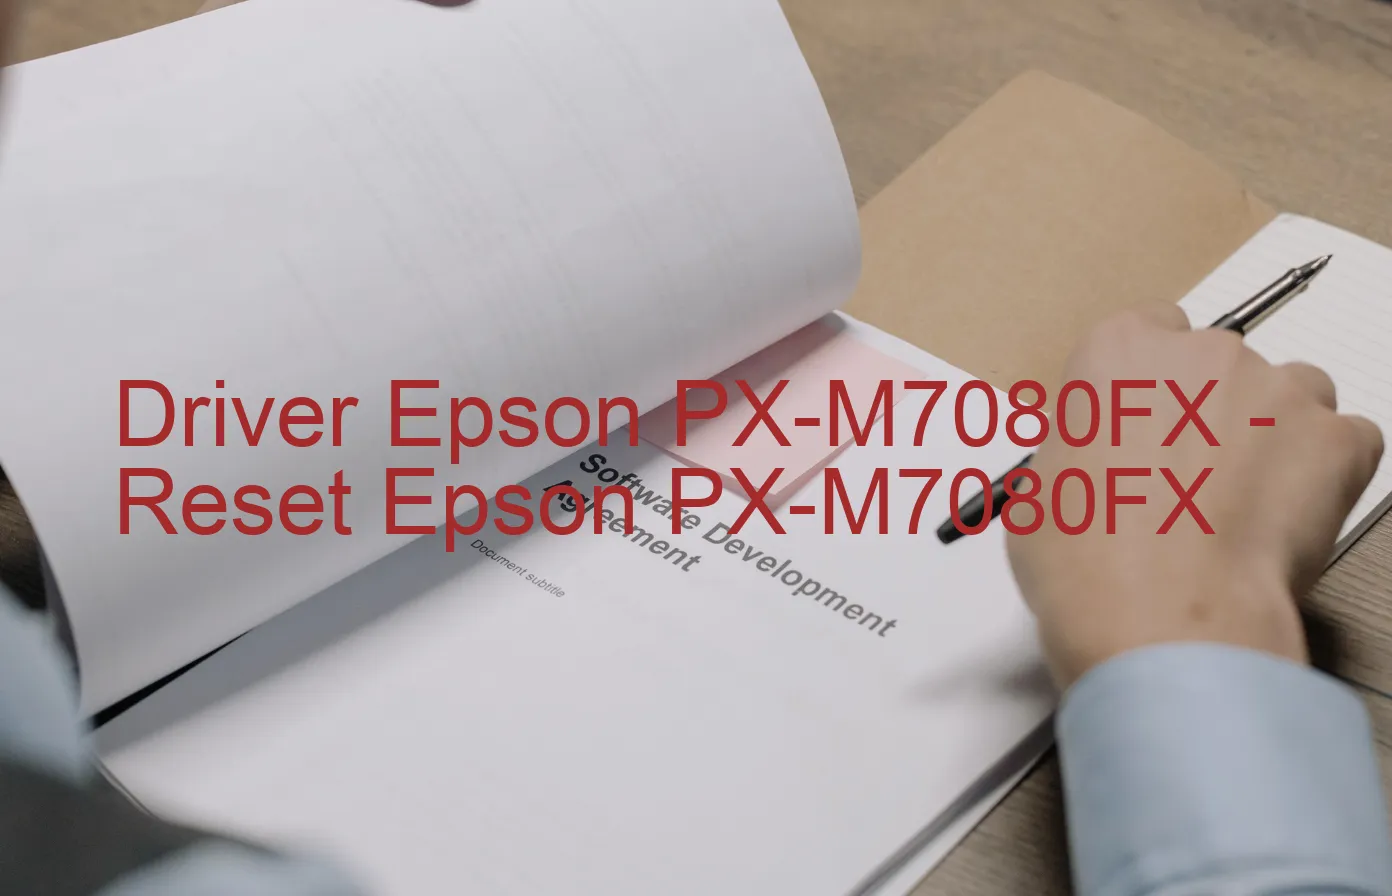 Epson PX-M7080FXのドライバー、Epson PX-M7080FXのリセットソフトウェア